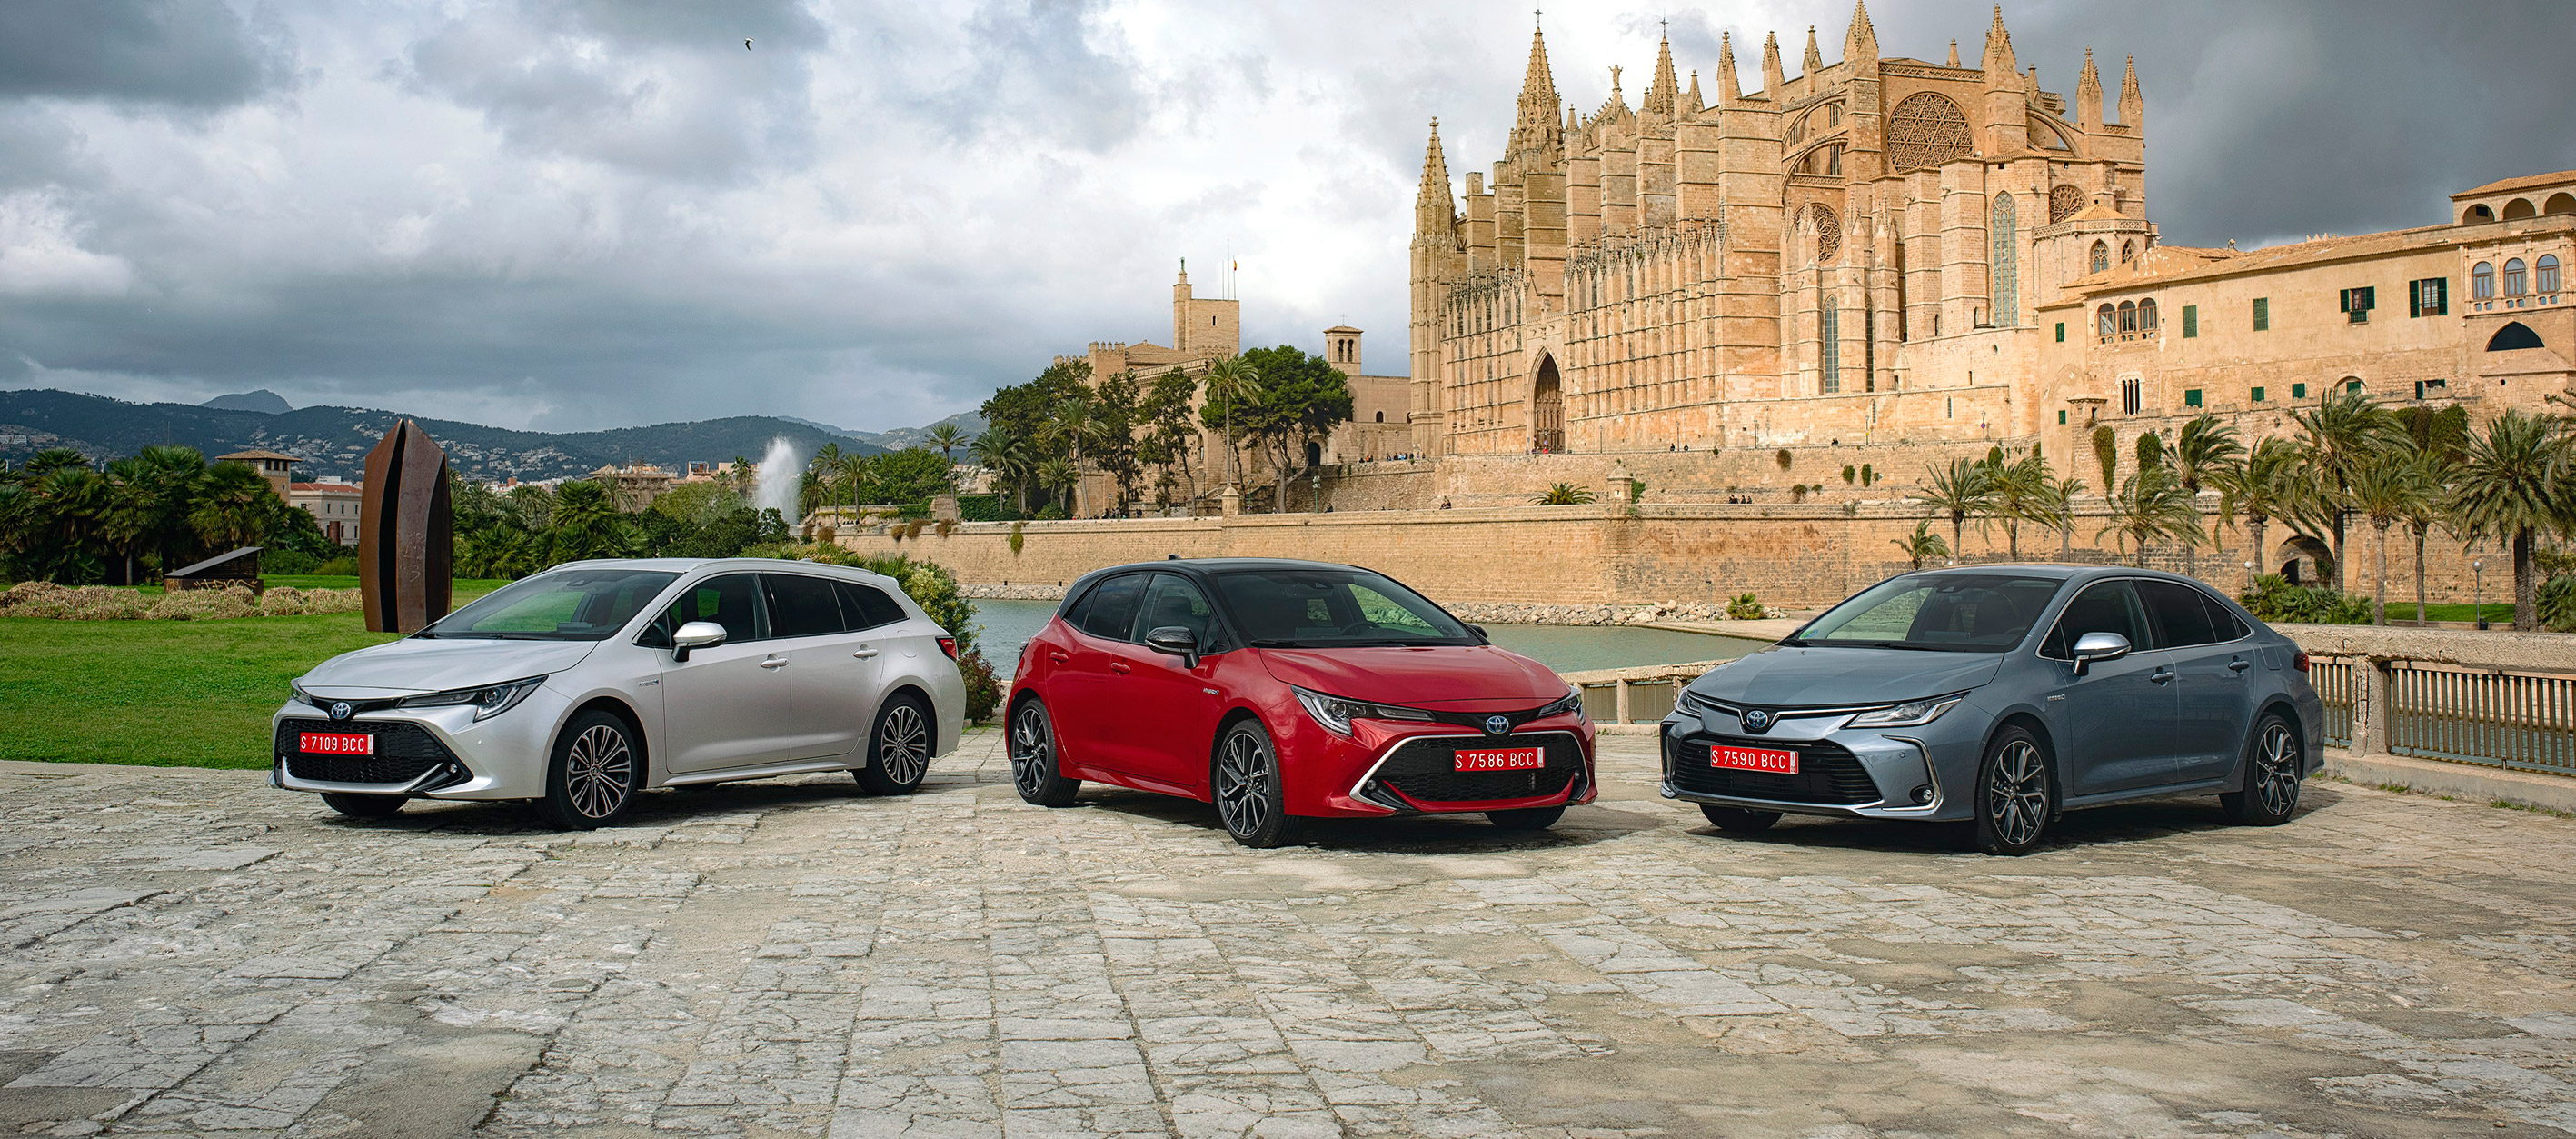 Toyota Corolla ya disponible en el mercado español